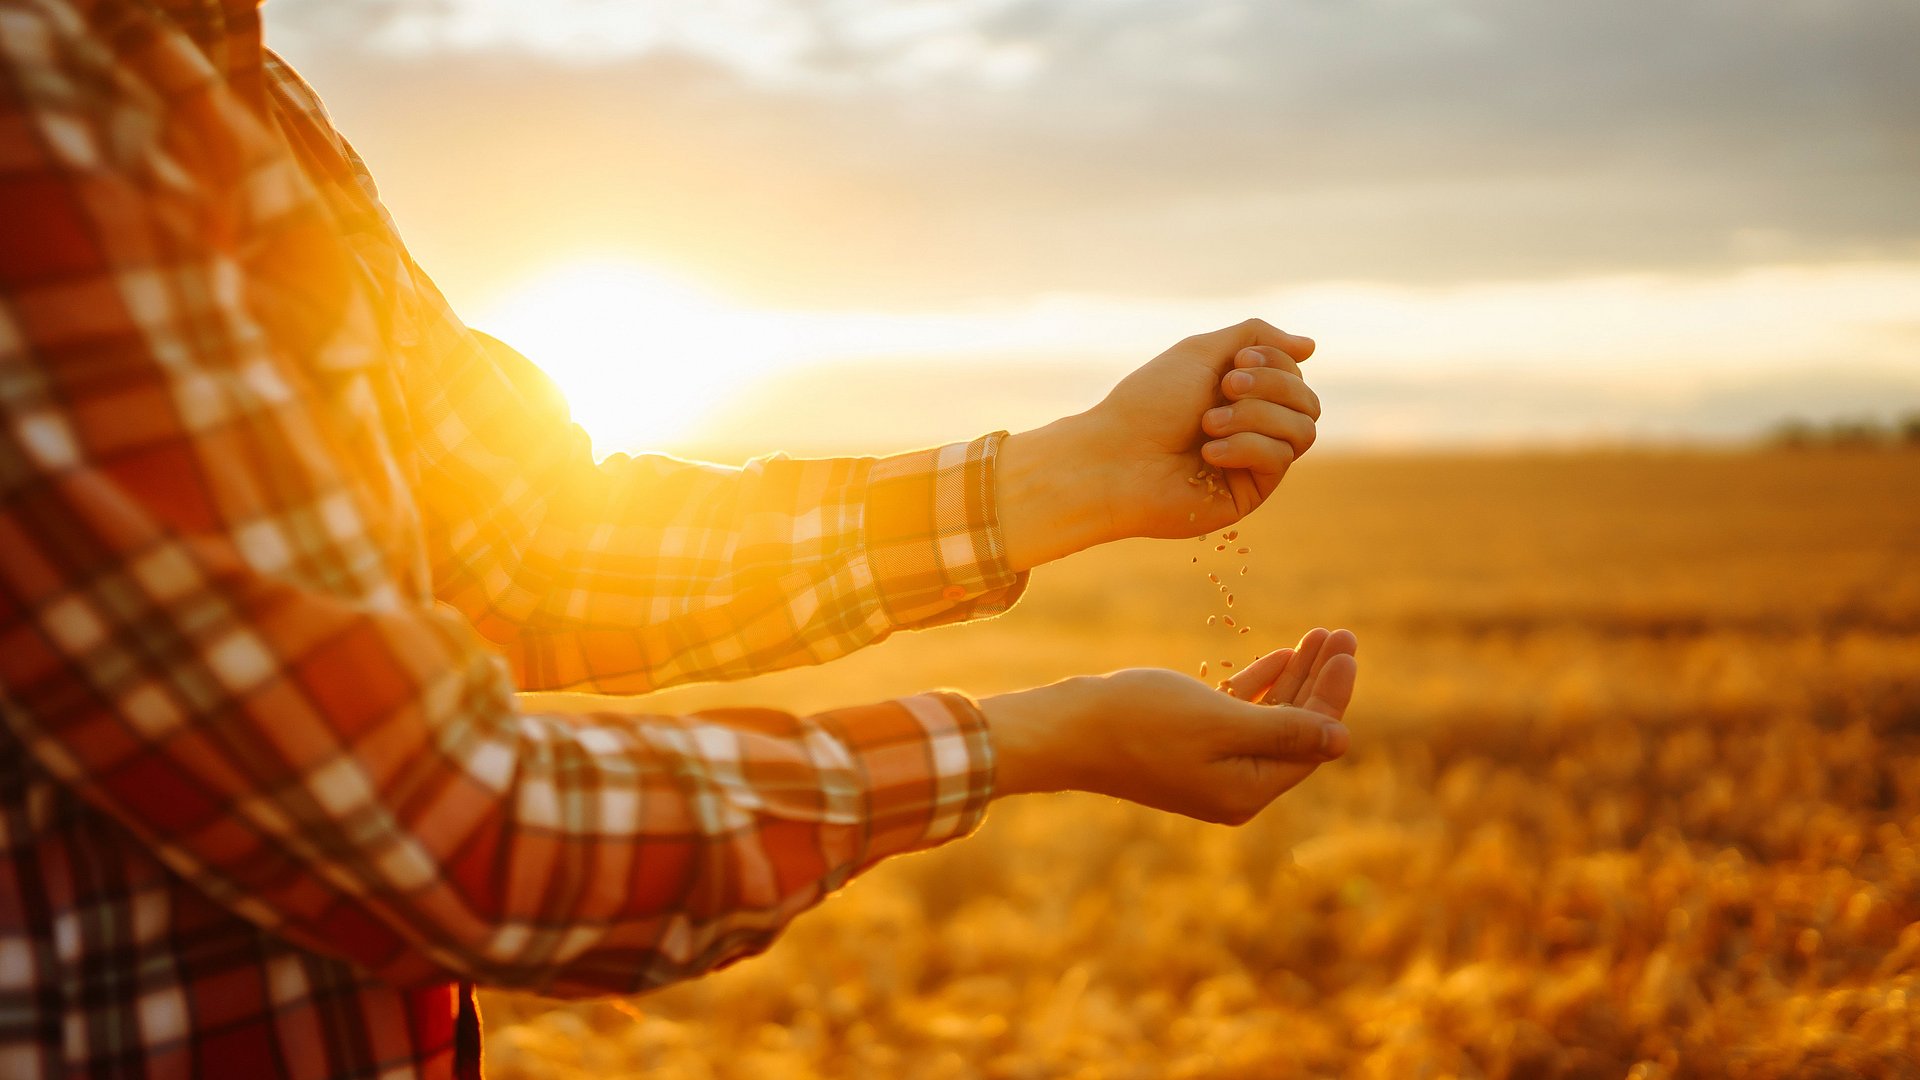 Mensch steht vor Weizenfeld im Sonnenuntergang, hält Weizenkörner in der Hand